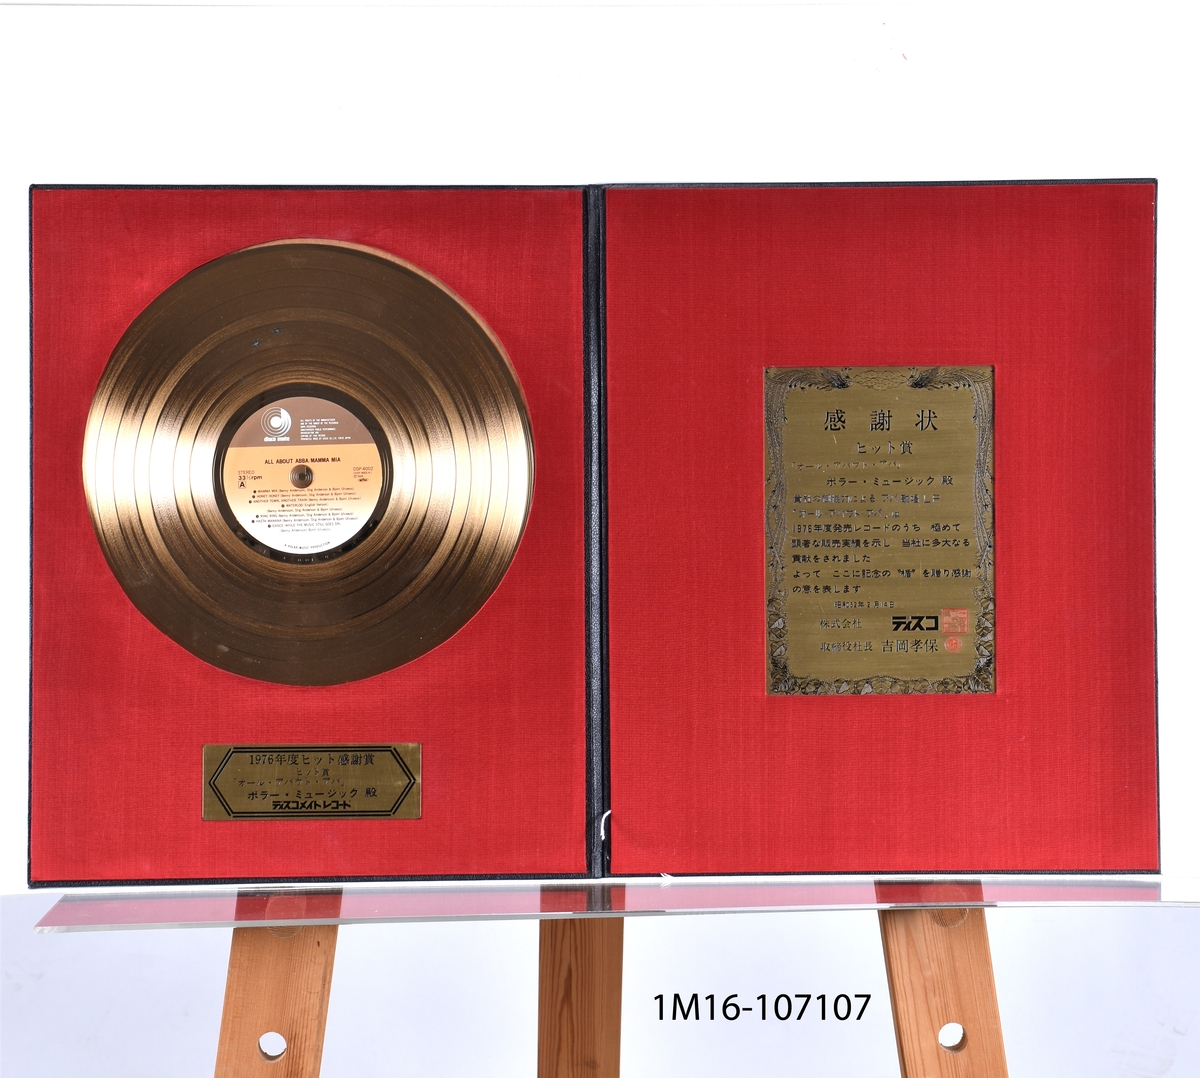 Guldskiva för All About ABBA/Mamma Mia, 1976. Utfärdat 1976. Japansk text. Guldskiva i läderomslag. Vänstra insidan sitter guldskiva fäst med en plakett under. Högra insidan en plakett. 

H 45 b36